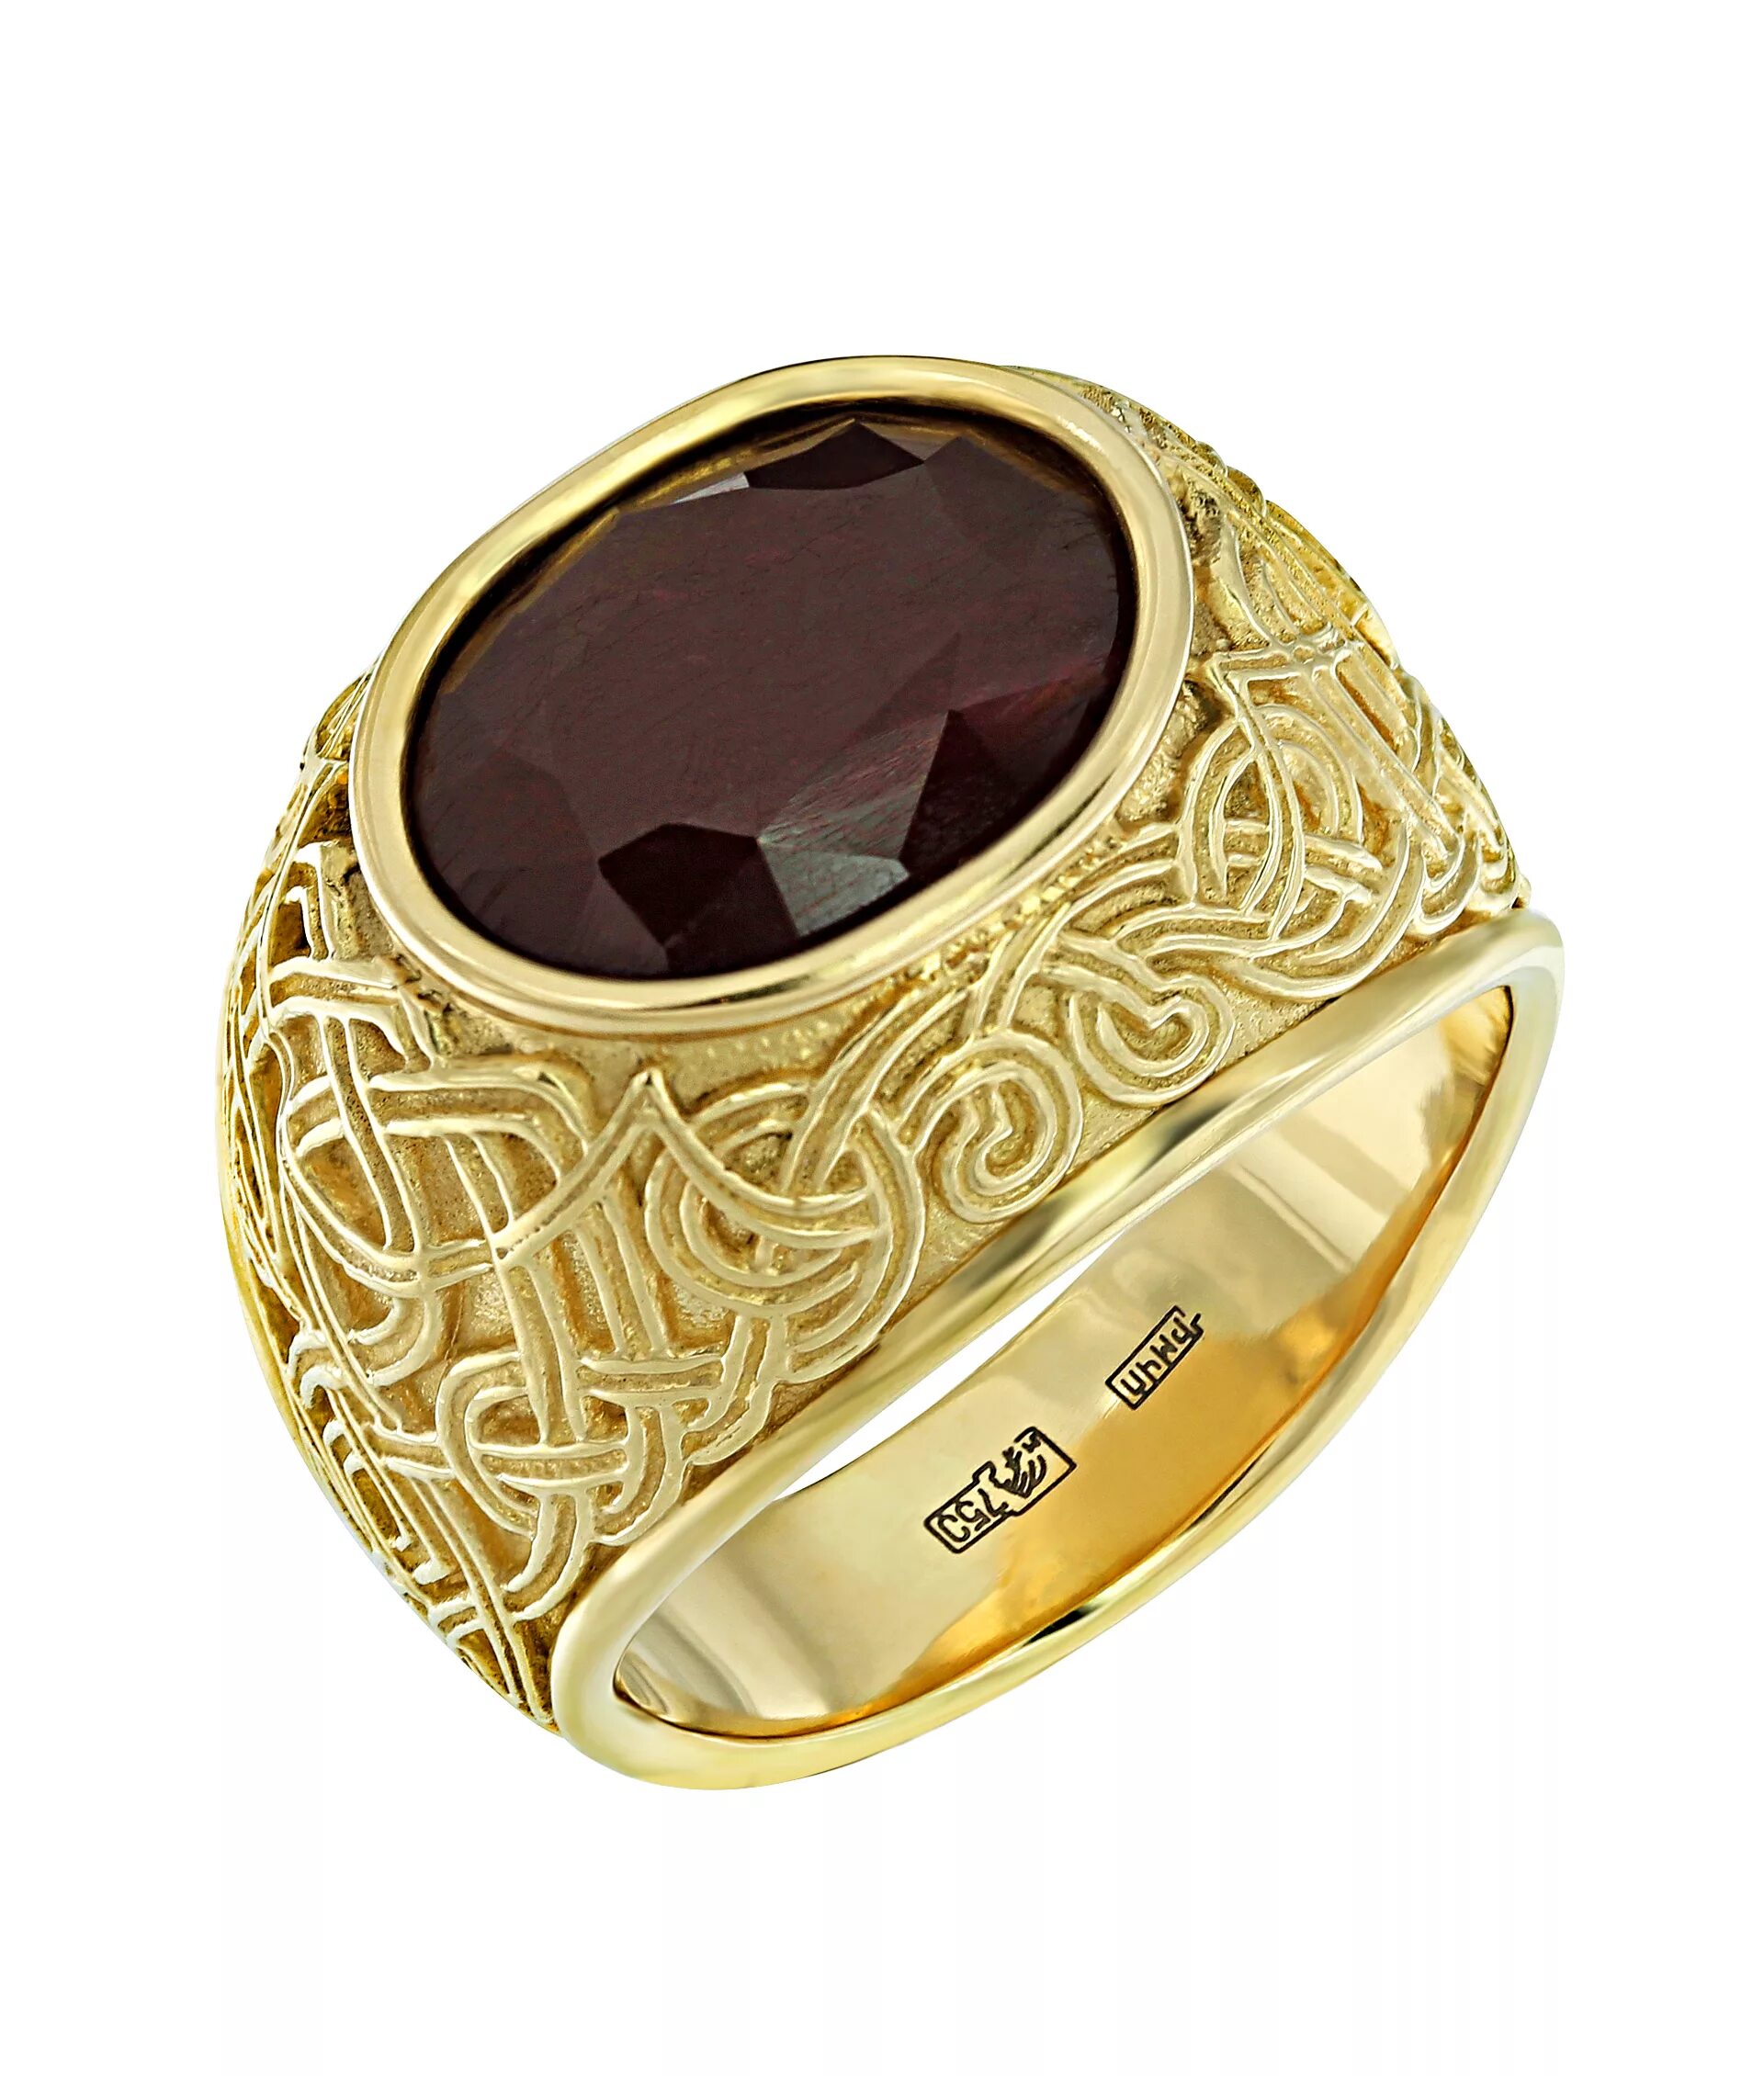 Золотой перстень 750 пробы. Золотое кольцо Маркиз 585 пробы с красным корундом. Золотой перстень СМЕРШ. Перстень мужской золотой с рубином.